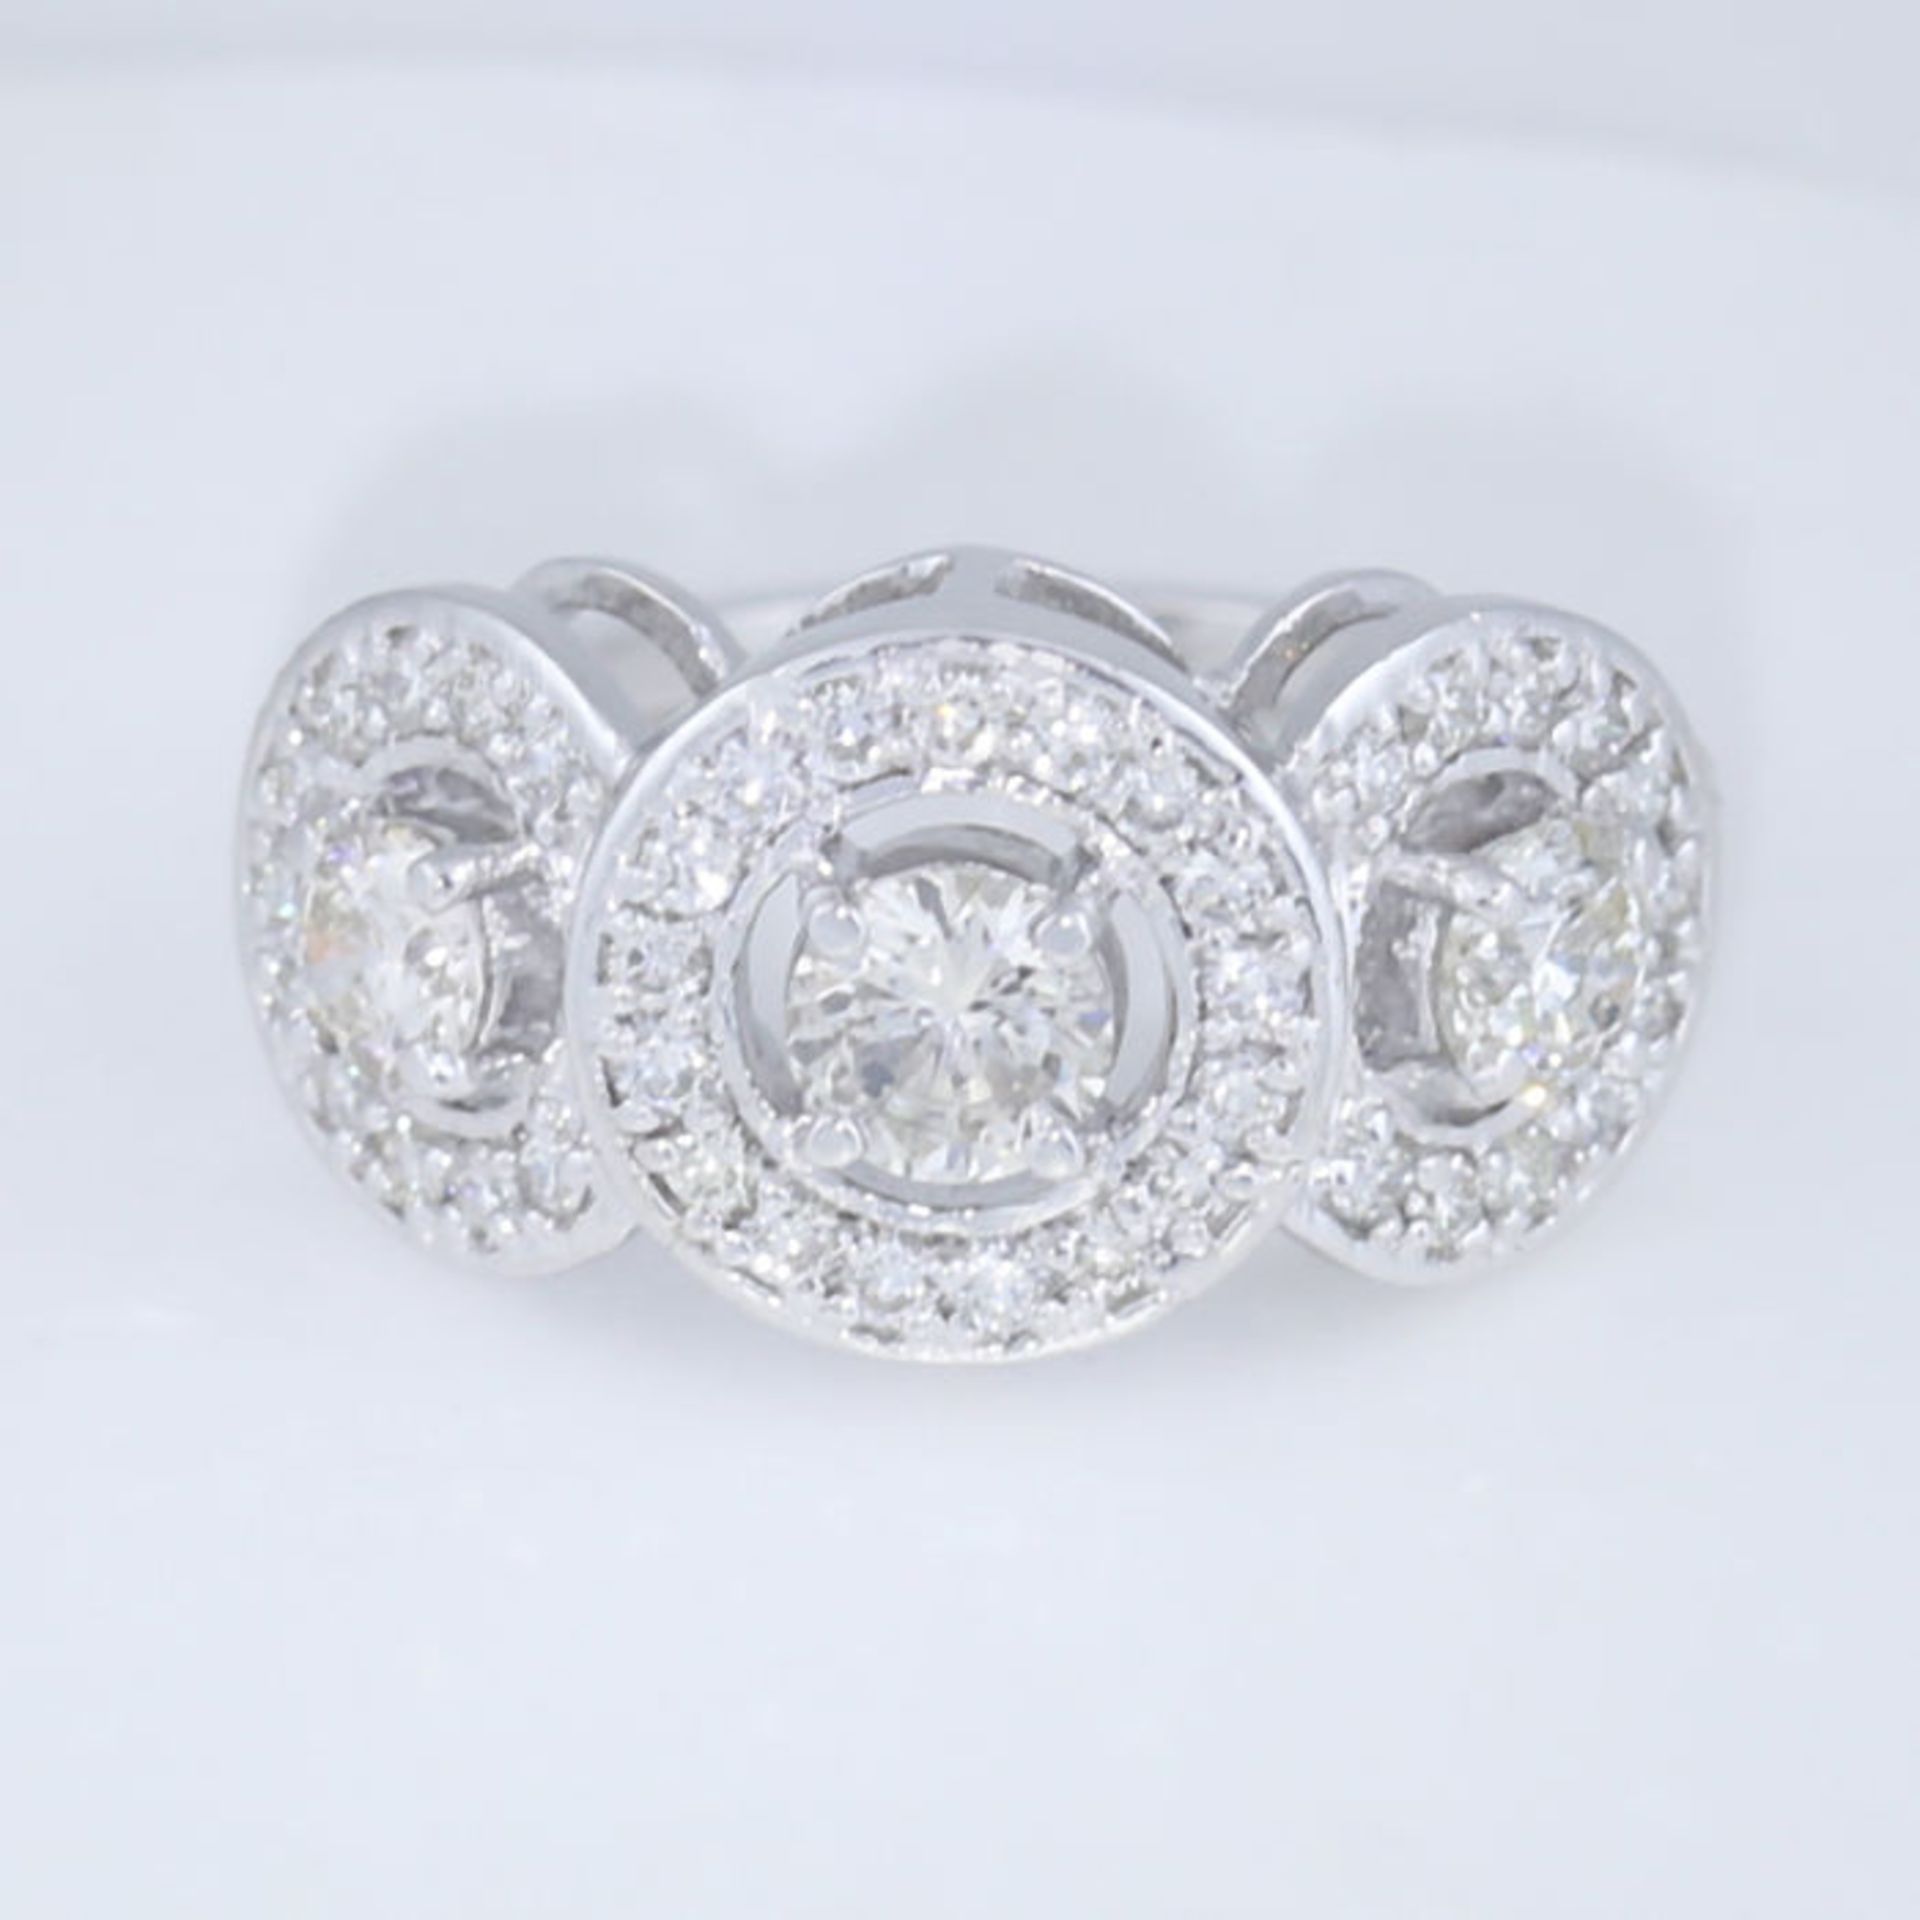 14 K / 585White Gold Designer 3 Solitaire Diamond Ring - Image 4 of 4